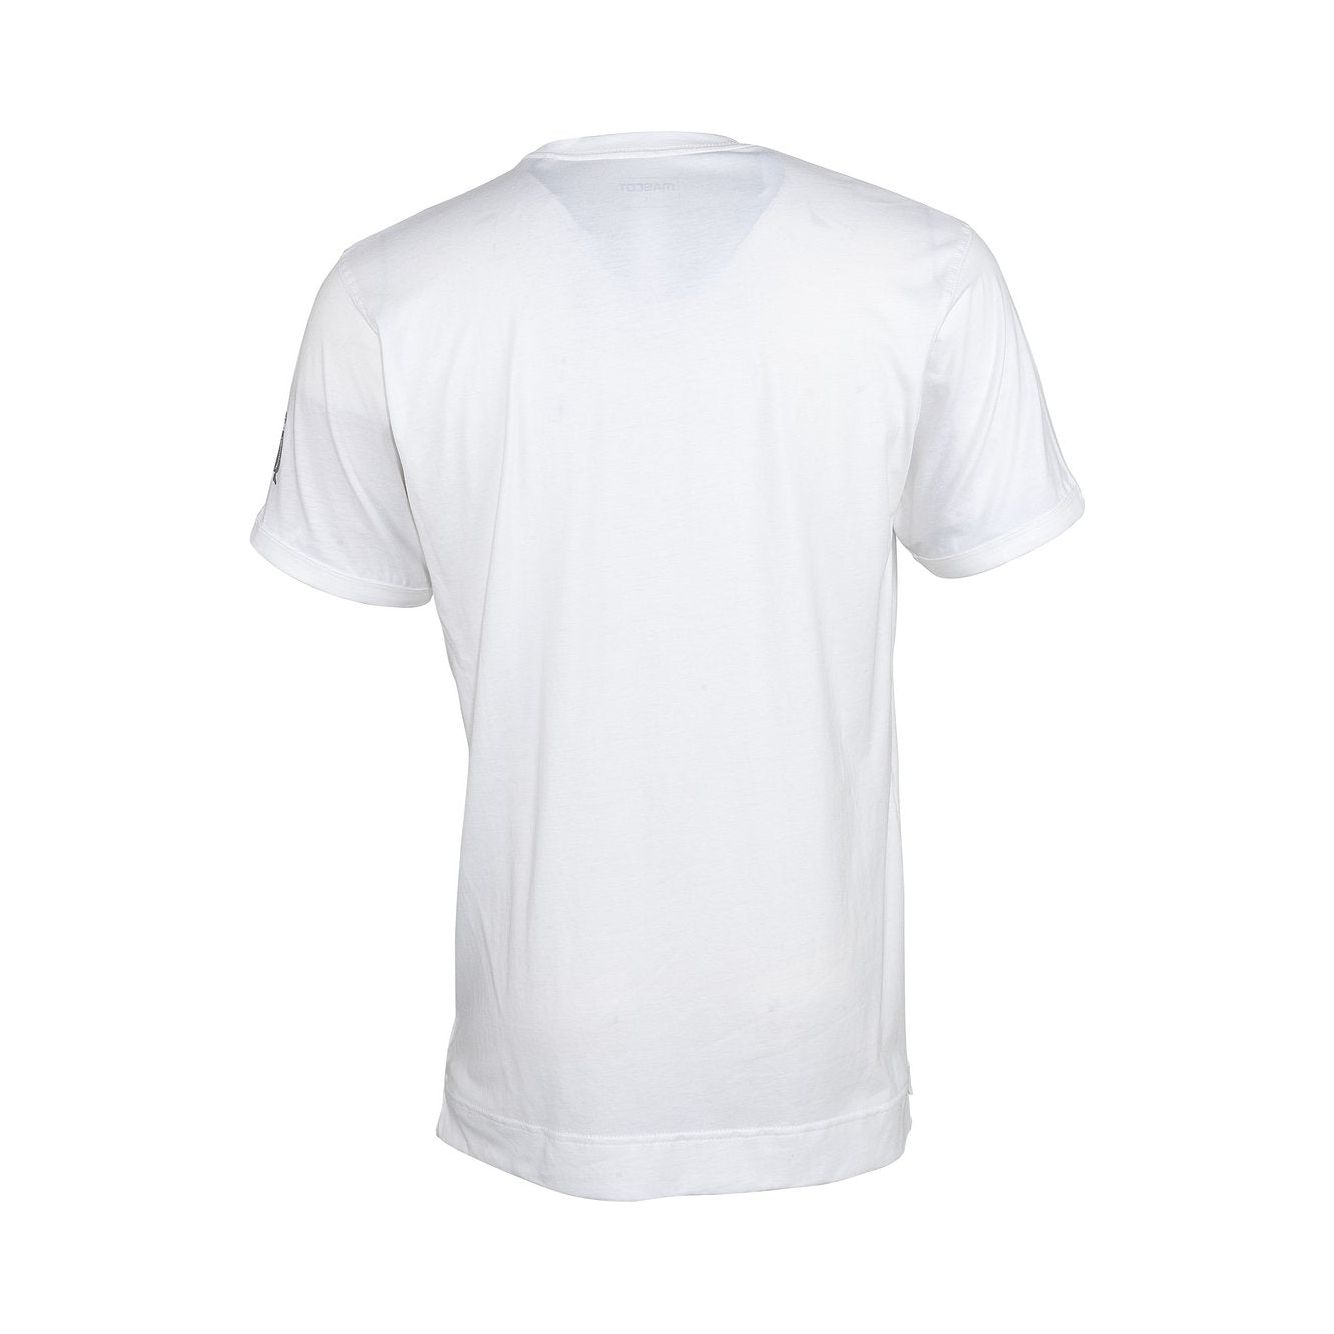 Mascot Algoso T-shirt V-Neck White 50415-250-06 Back